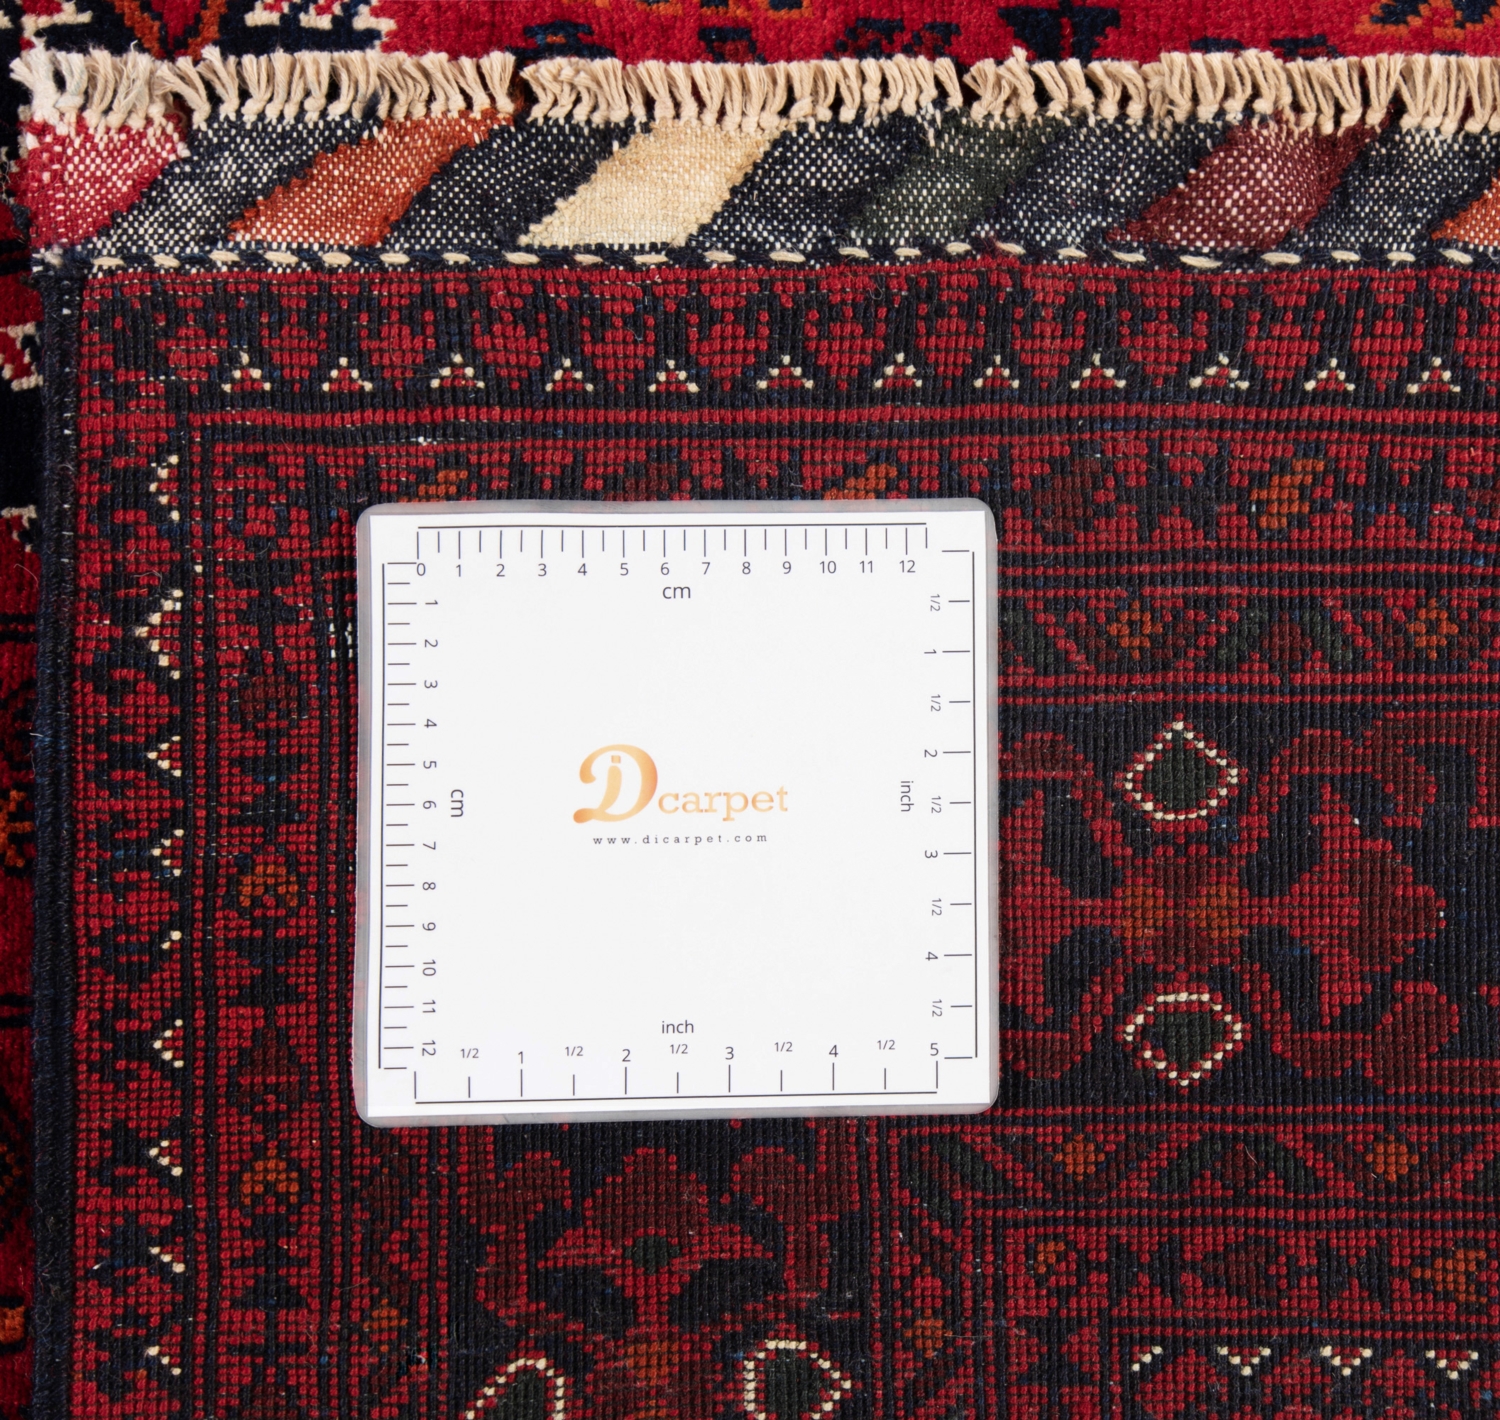 Afghansk Ersari tæppe